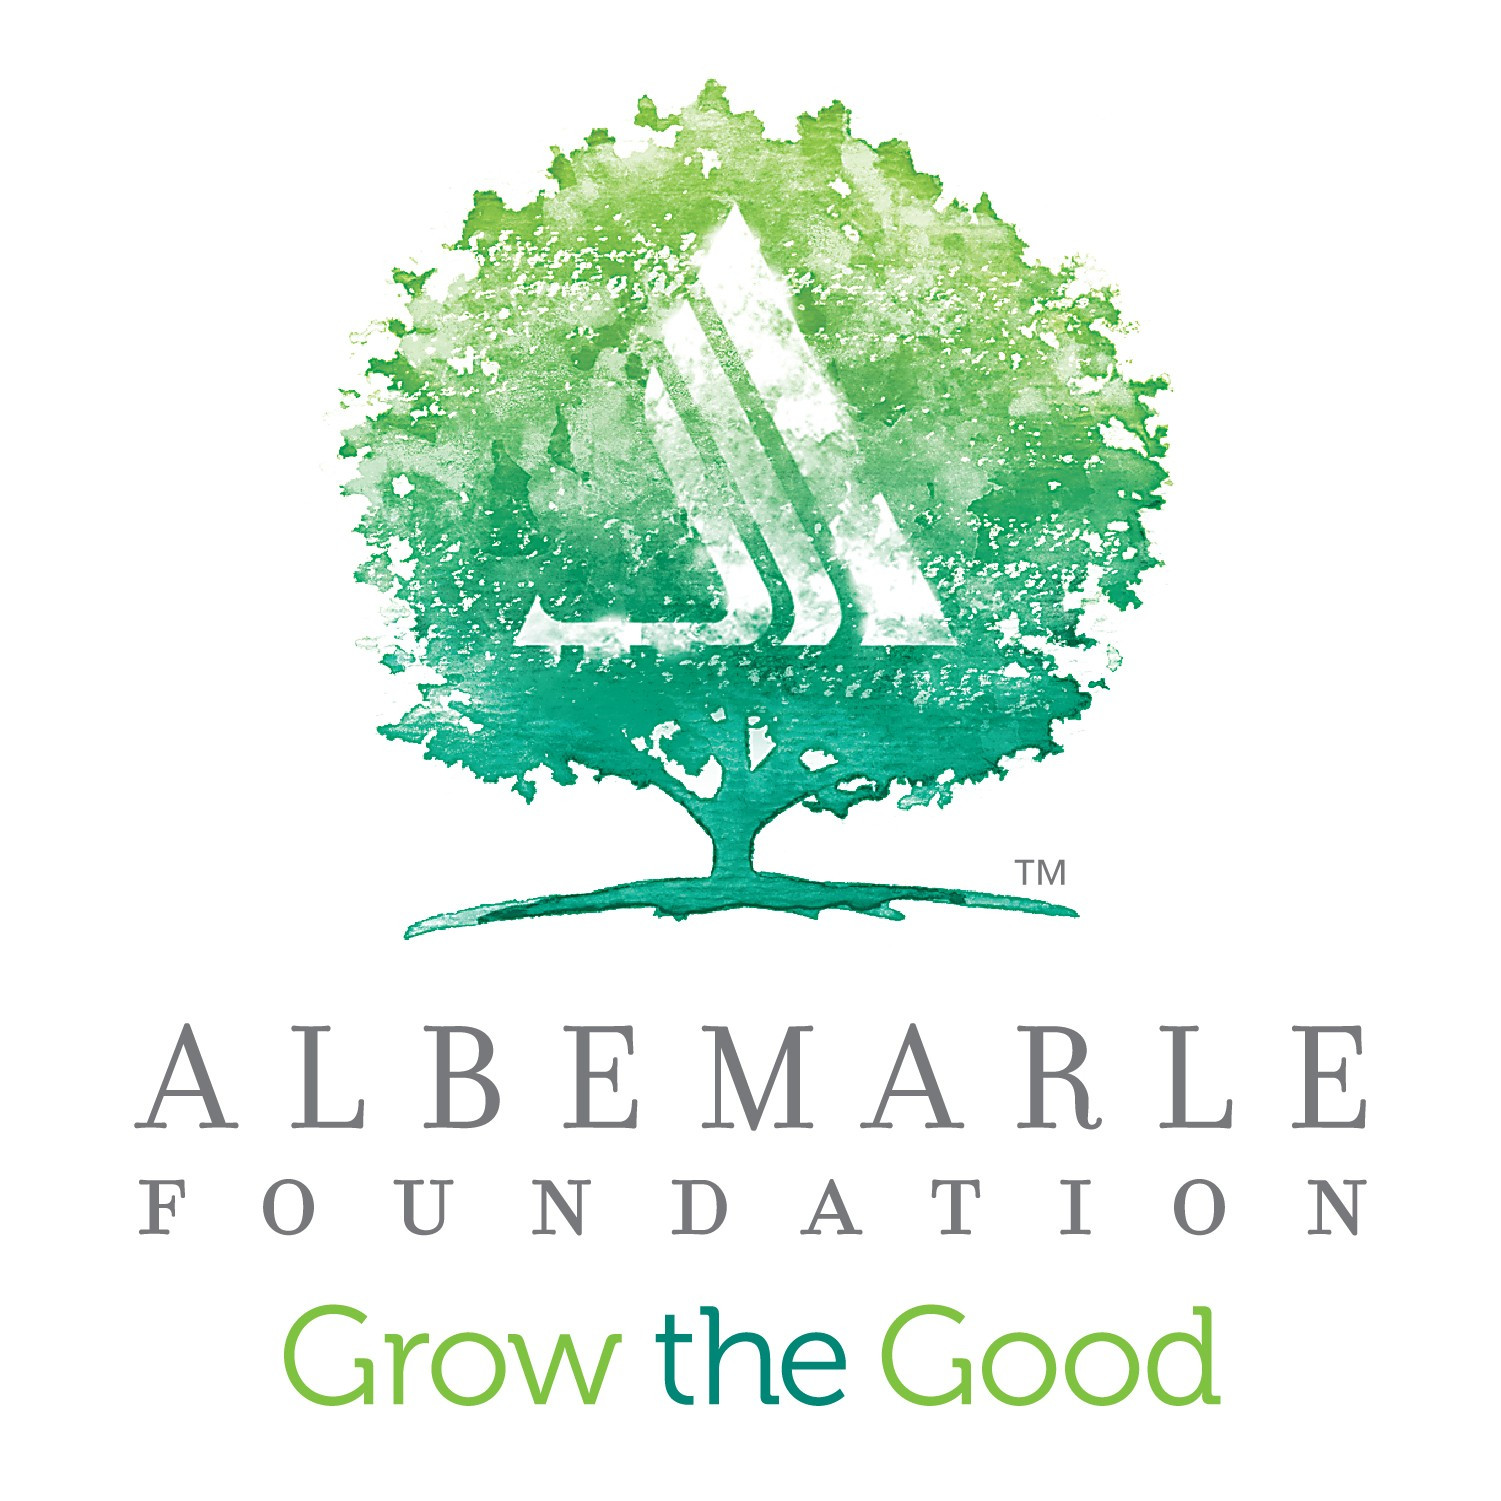 Albemarle Foundation - Grow the Good